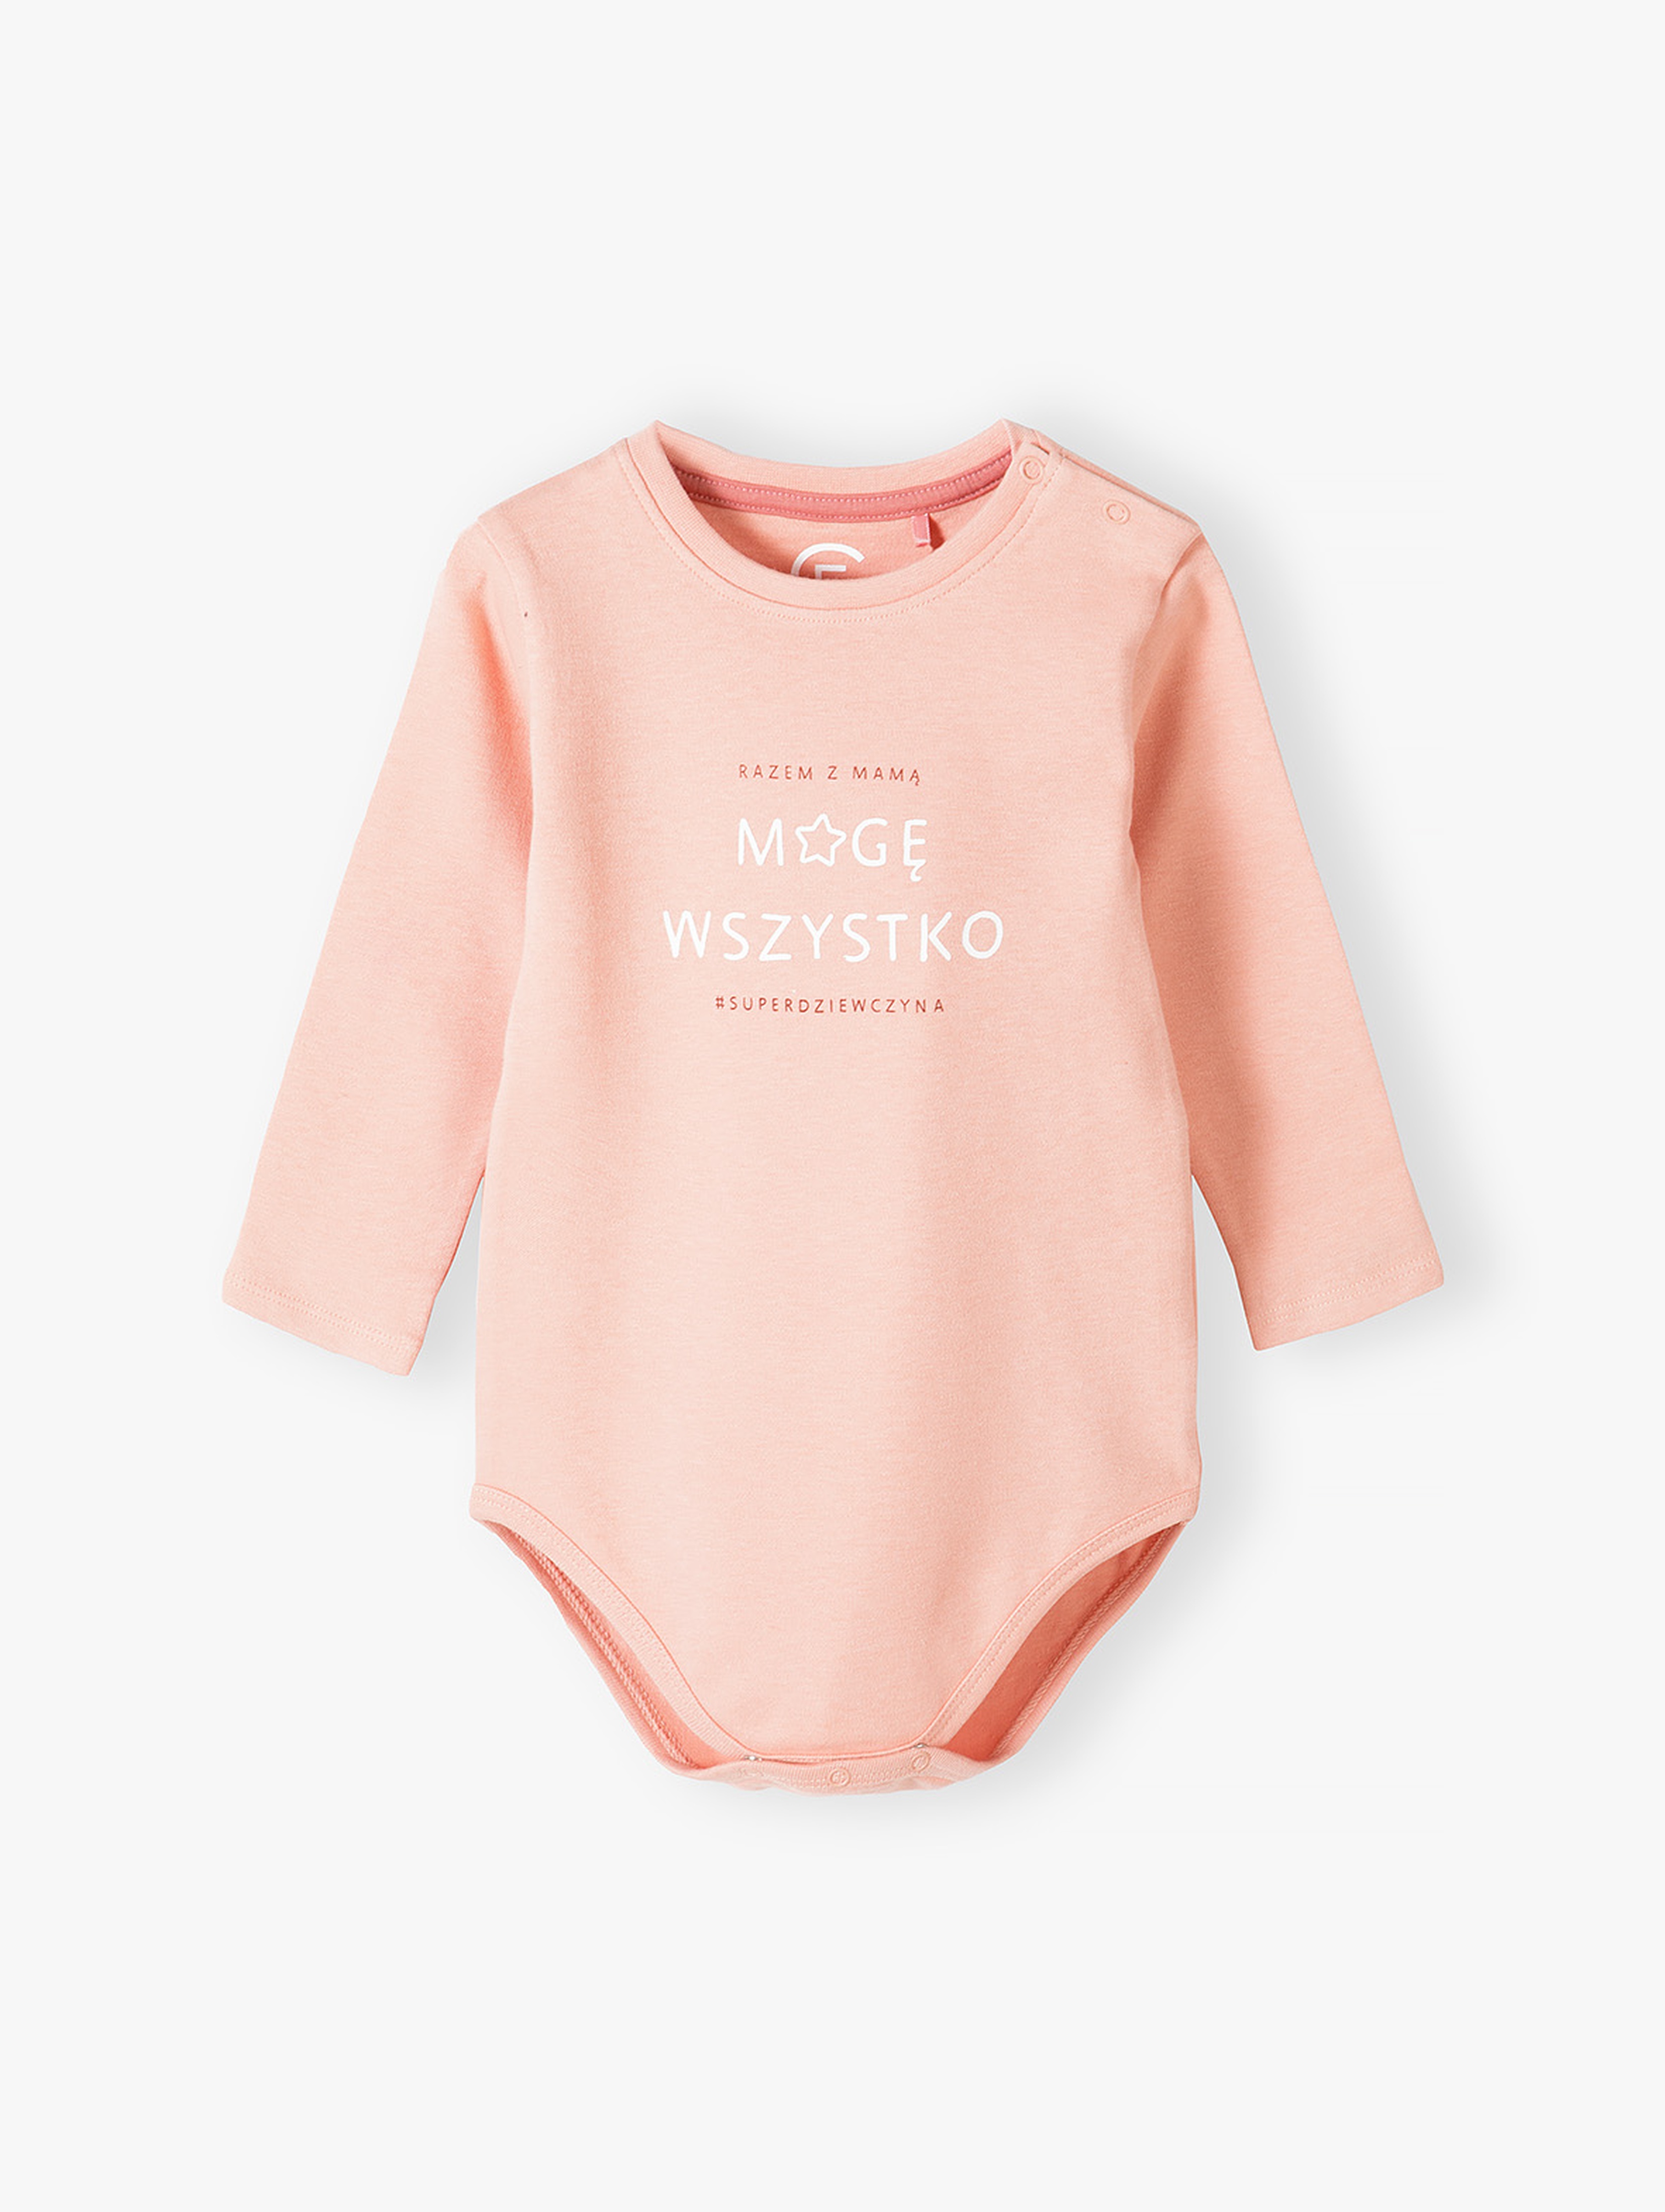 Bawełniane body niemowlęce różowe z długim rękawem z napisem Mogę Wszystko - różowe